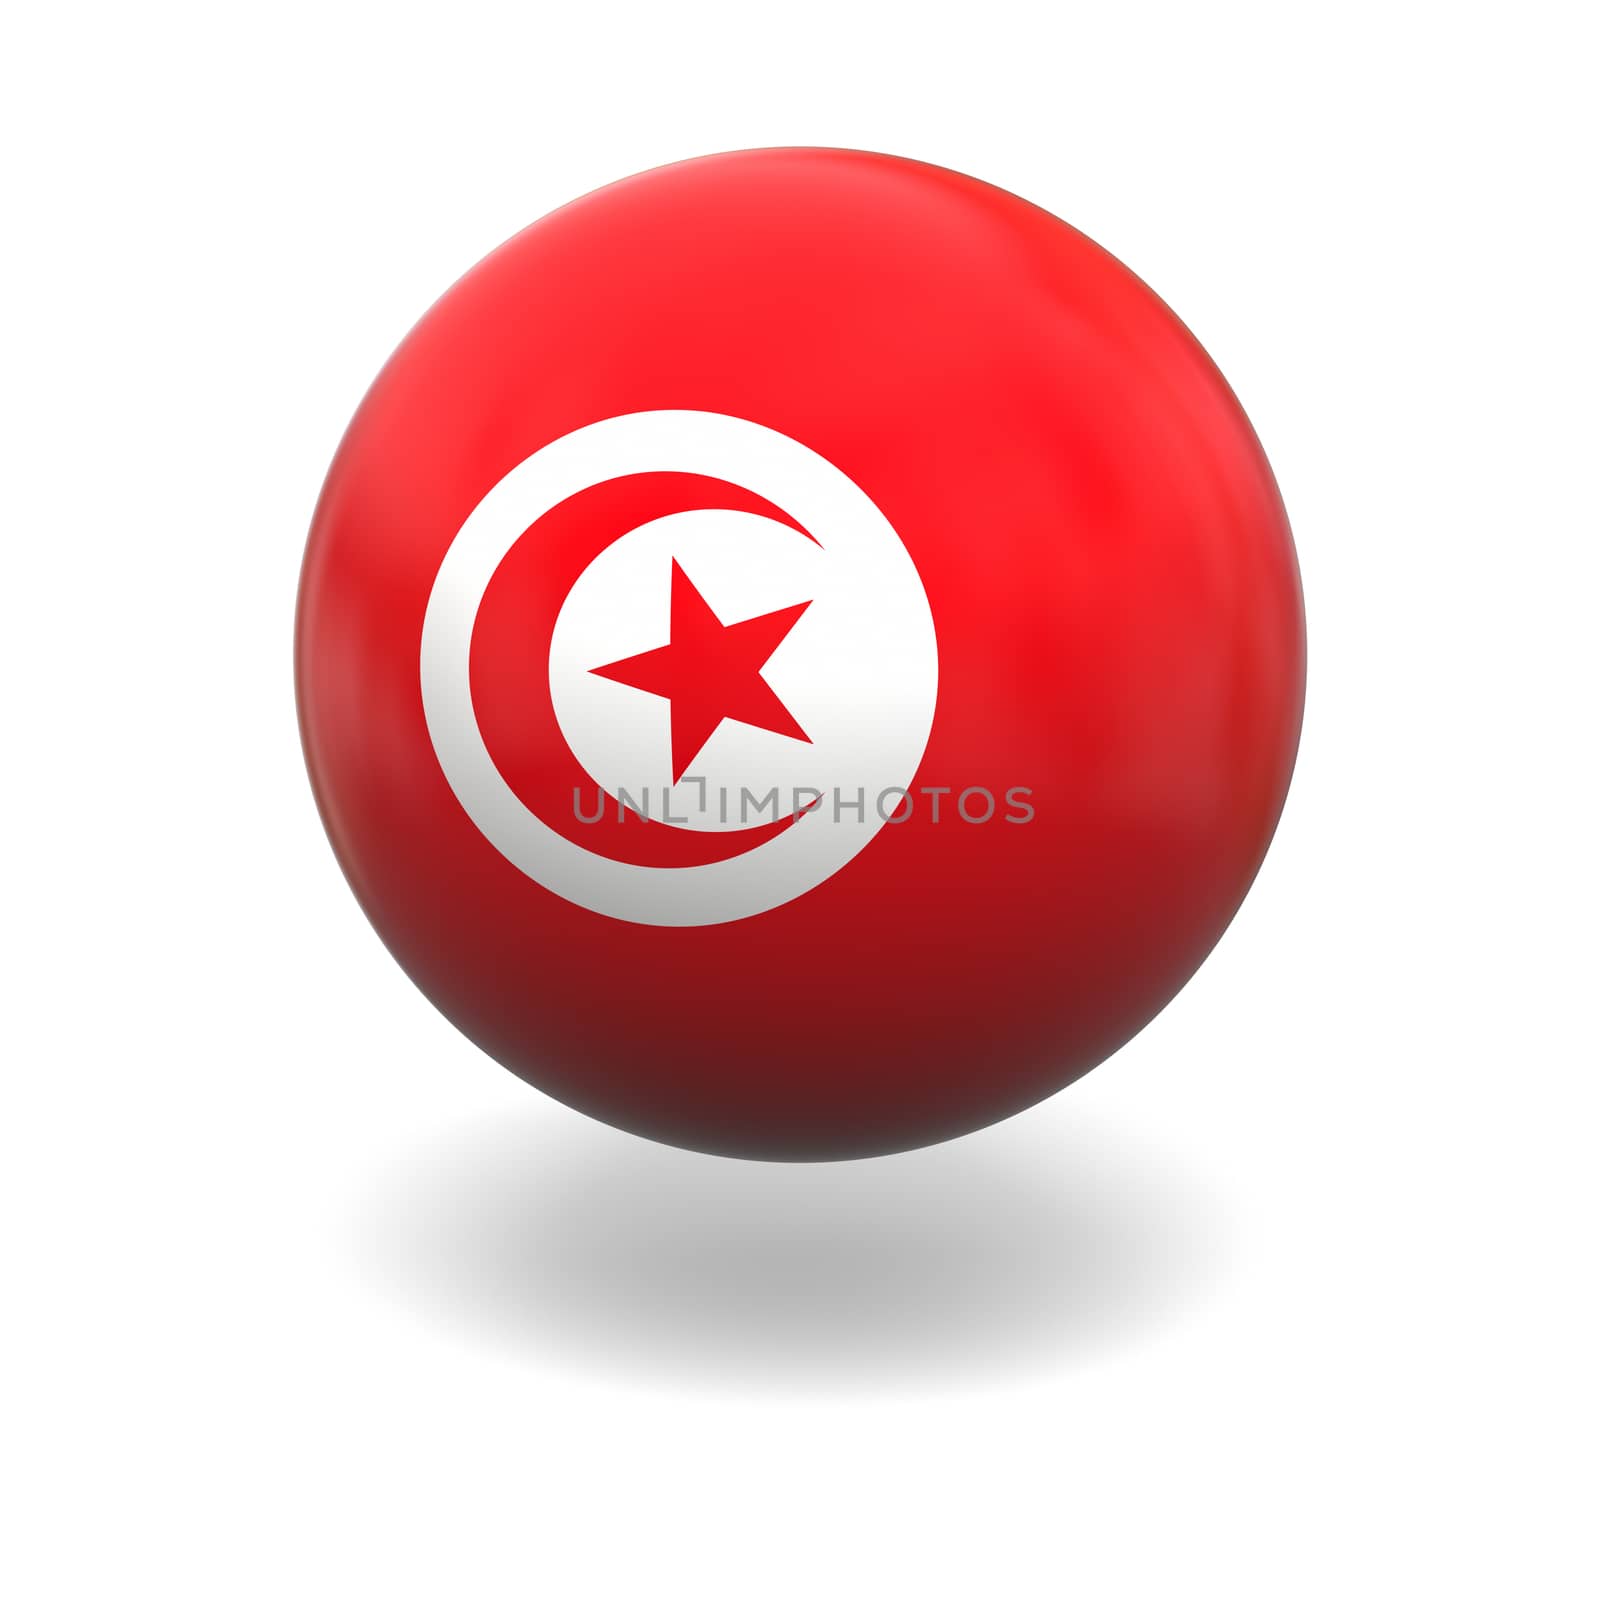 Tunisian flag by Harvepino